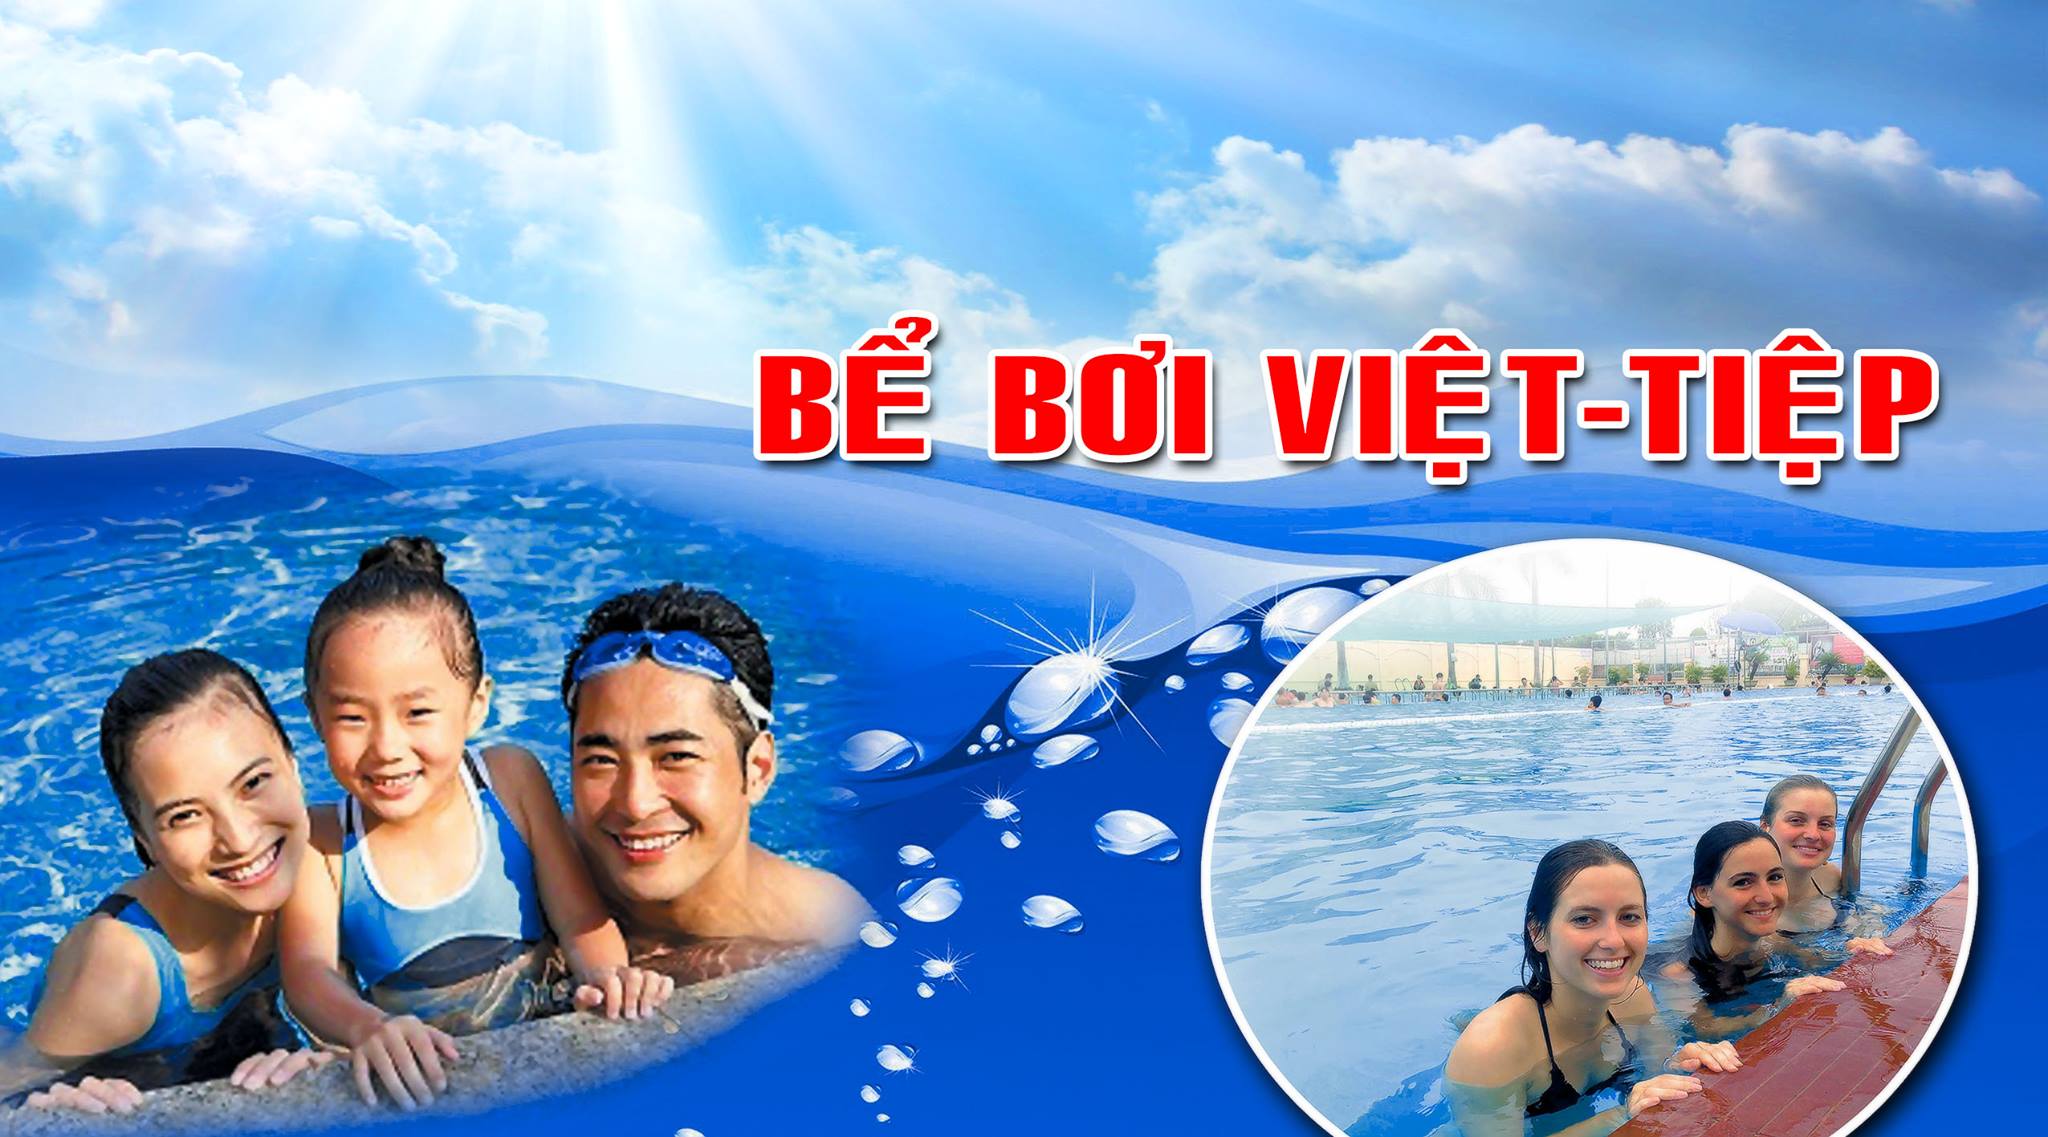 Bể bơi Cung văn hoá Việt Tiệp ảnh 1